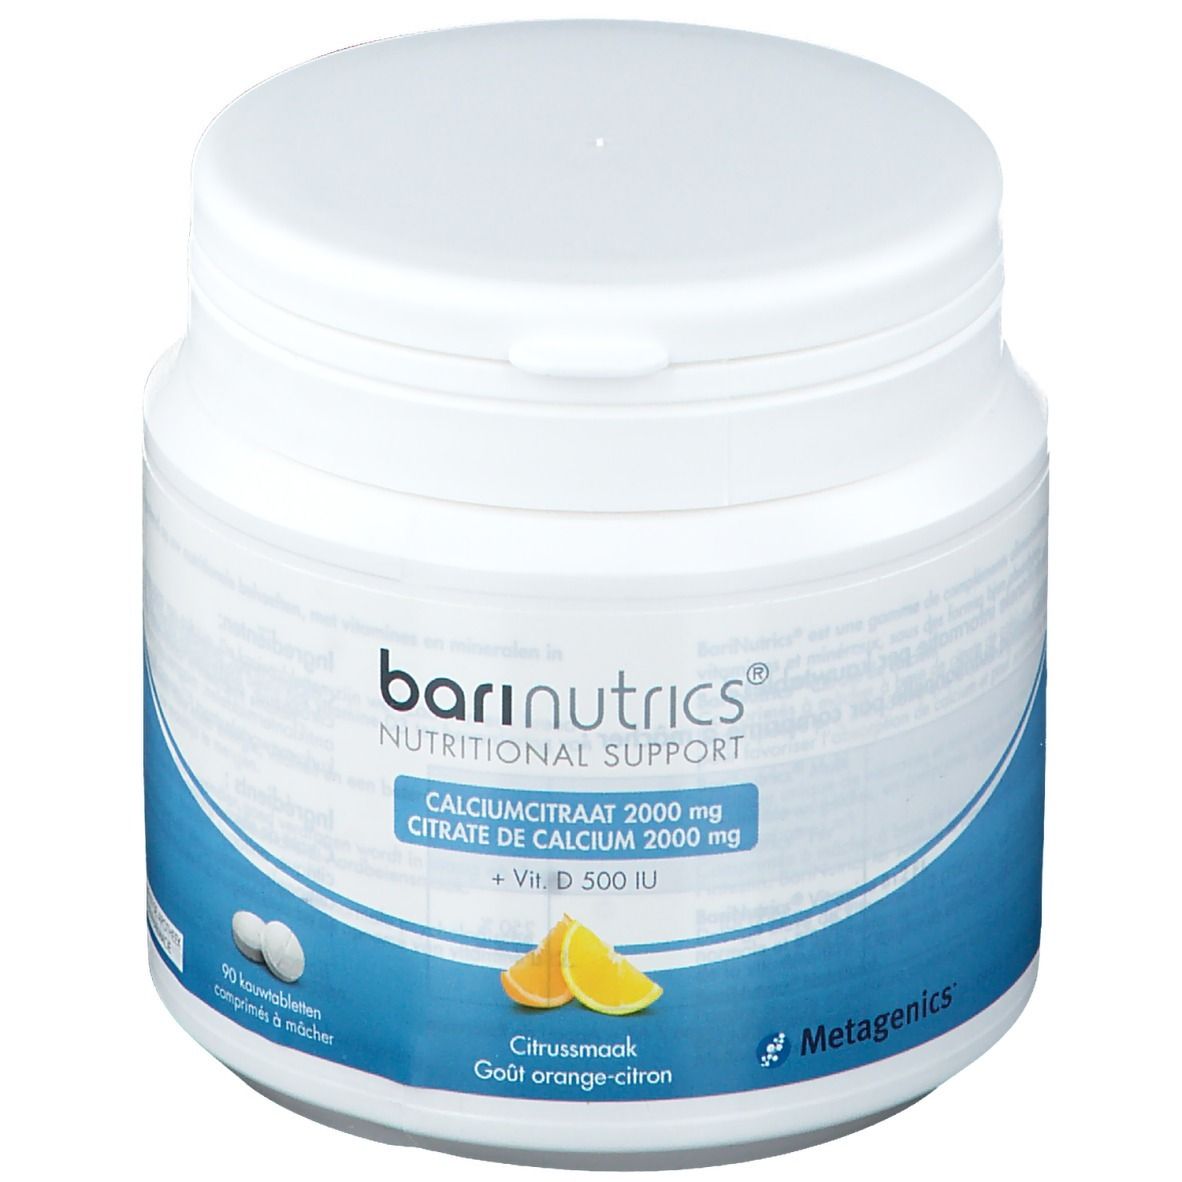 BariNutrics Citrate de Calcium